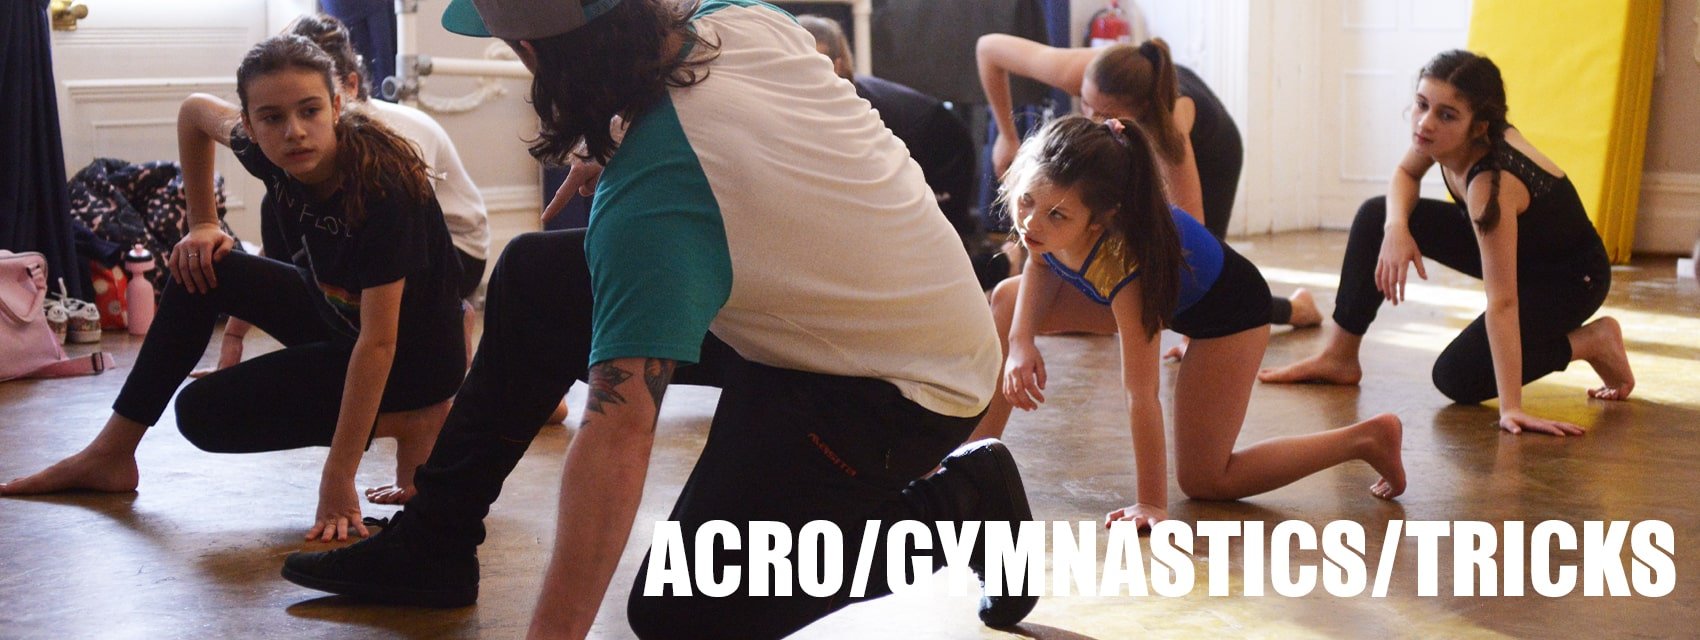 Fulham 4-6 Years Acro / Gymnastics Classes - Saturdays at 11:15am in Studio 2